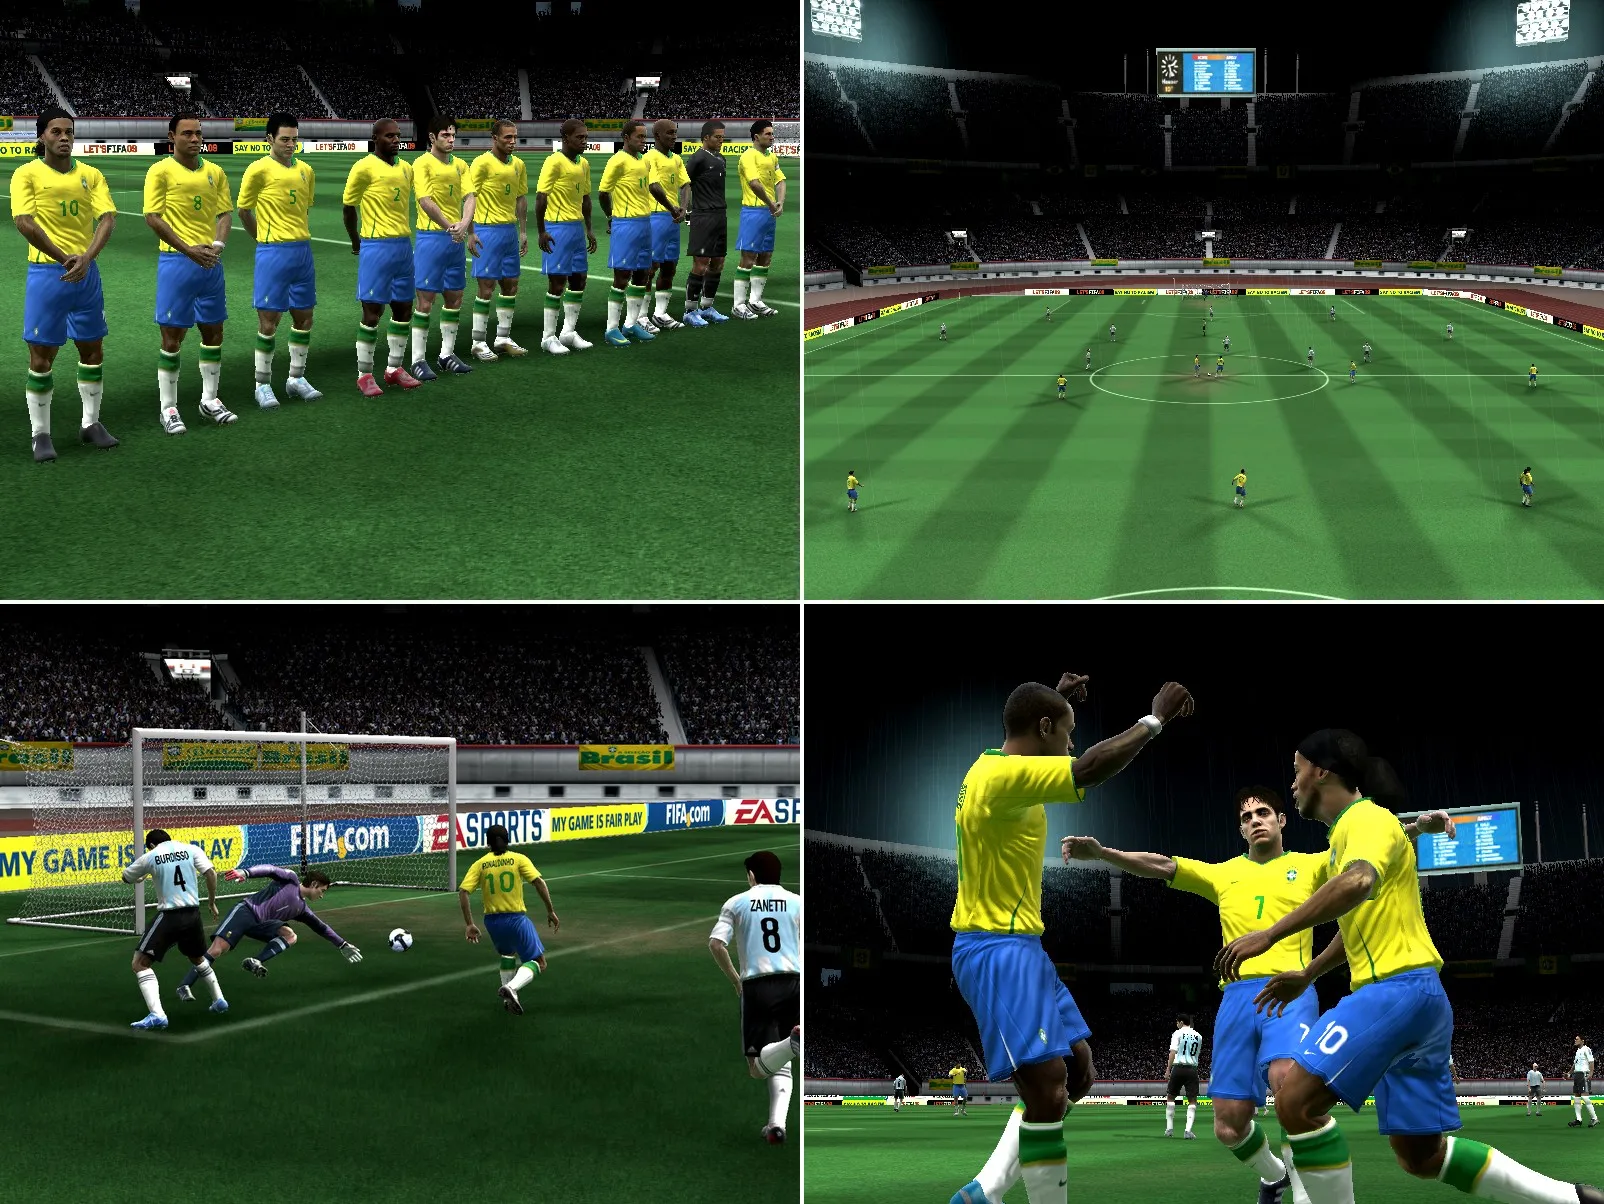 FIFA Soccer 09: Partidas de futebol com controle total nos PCs